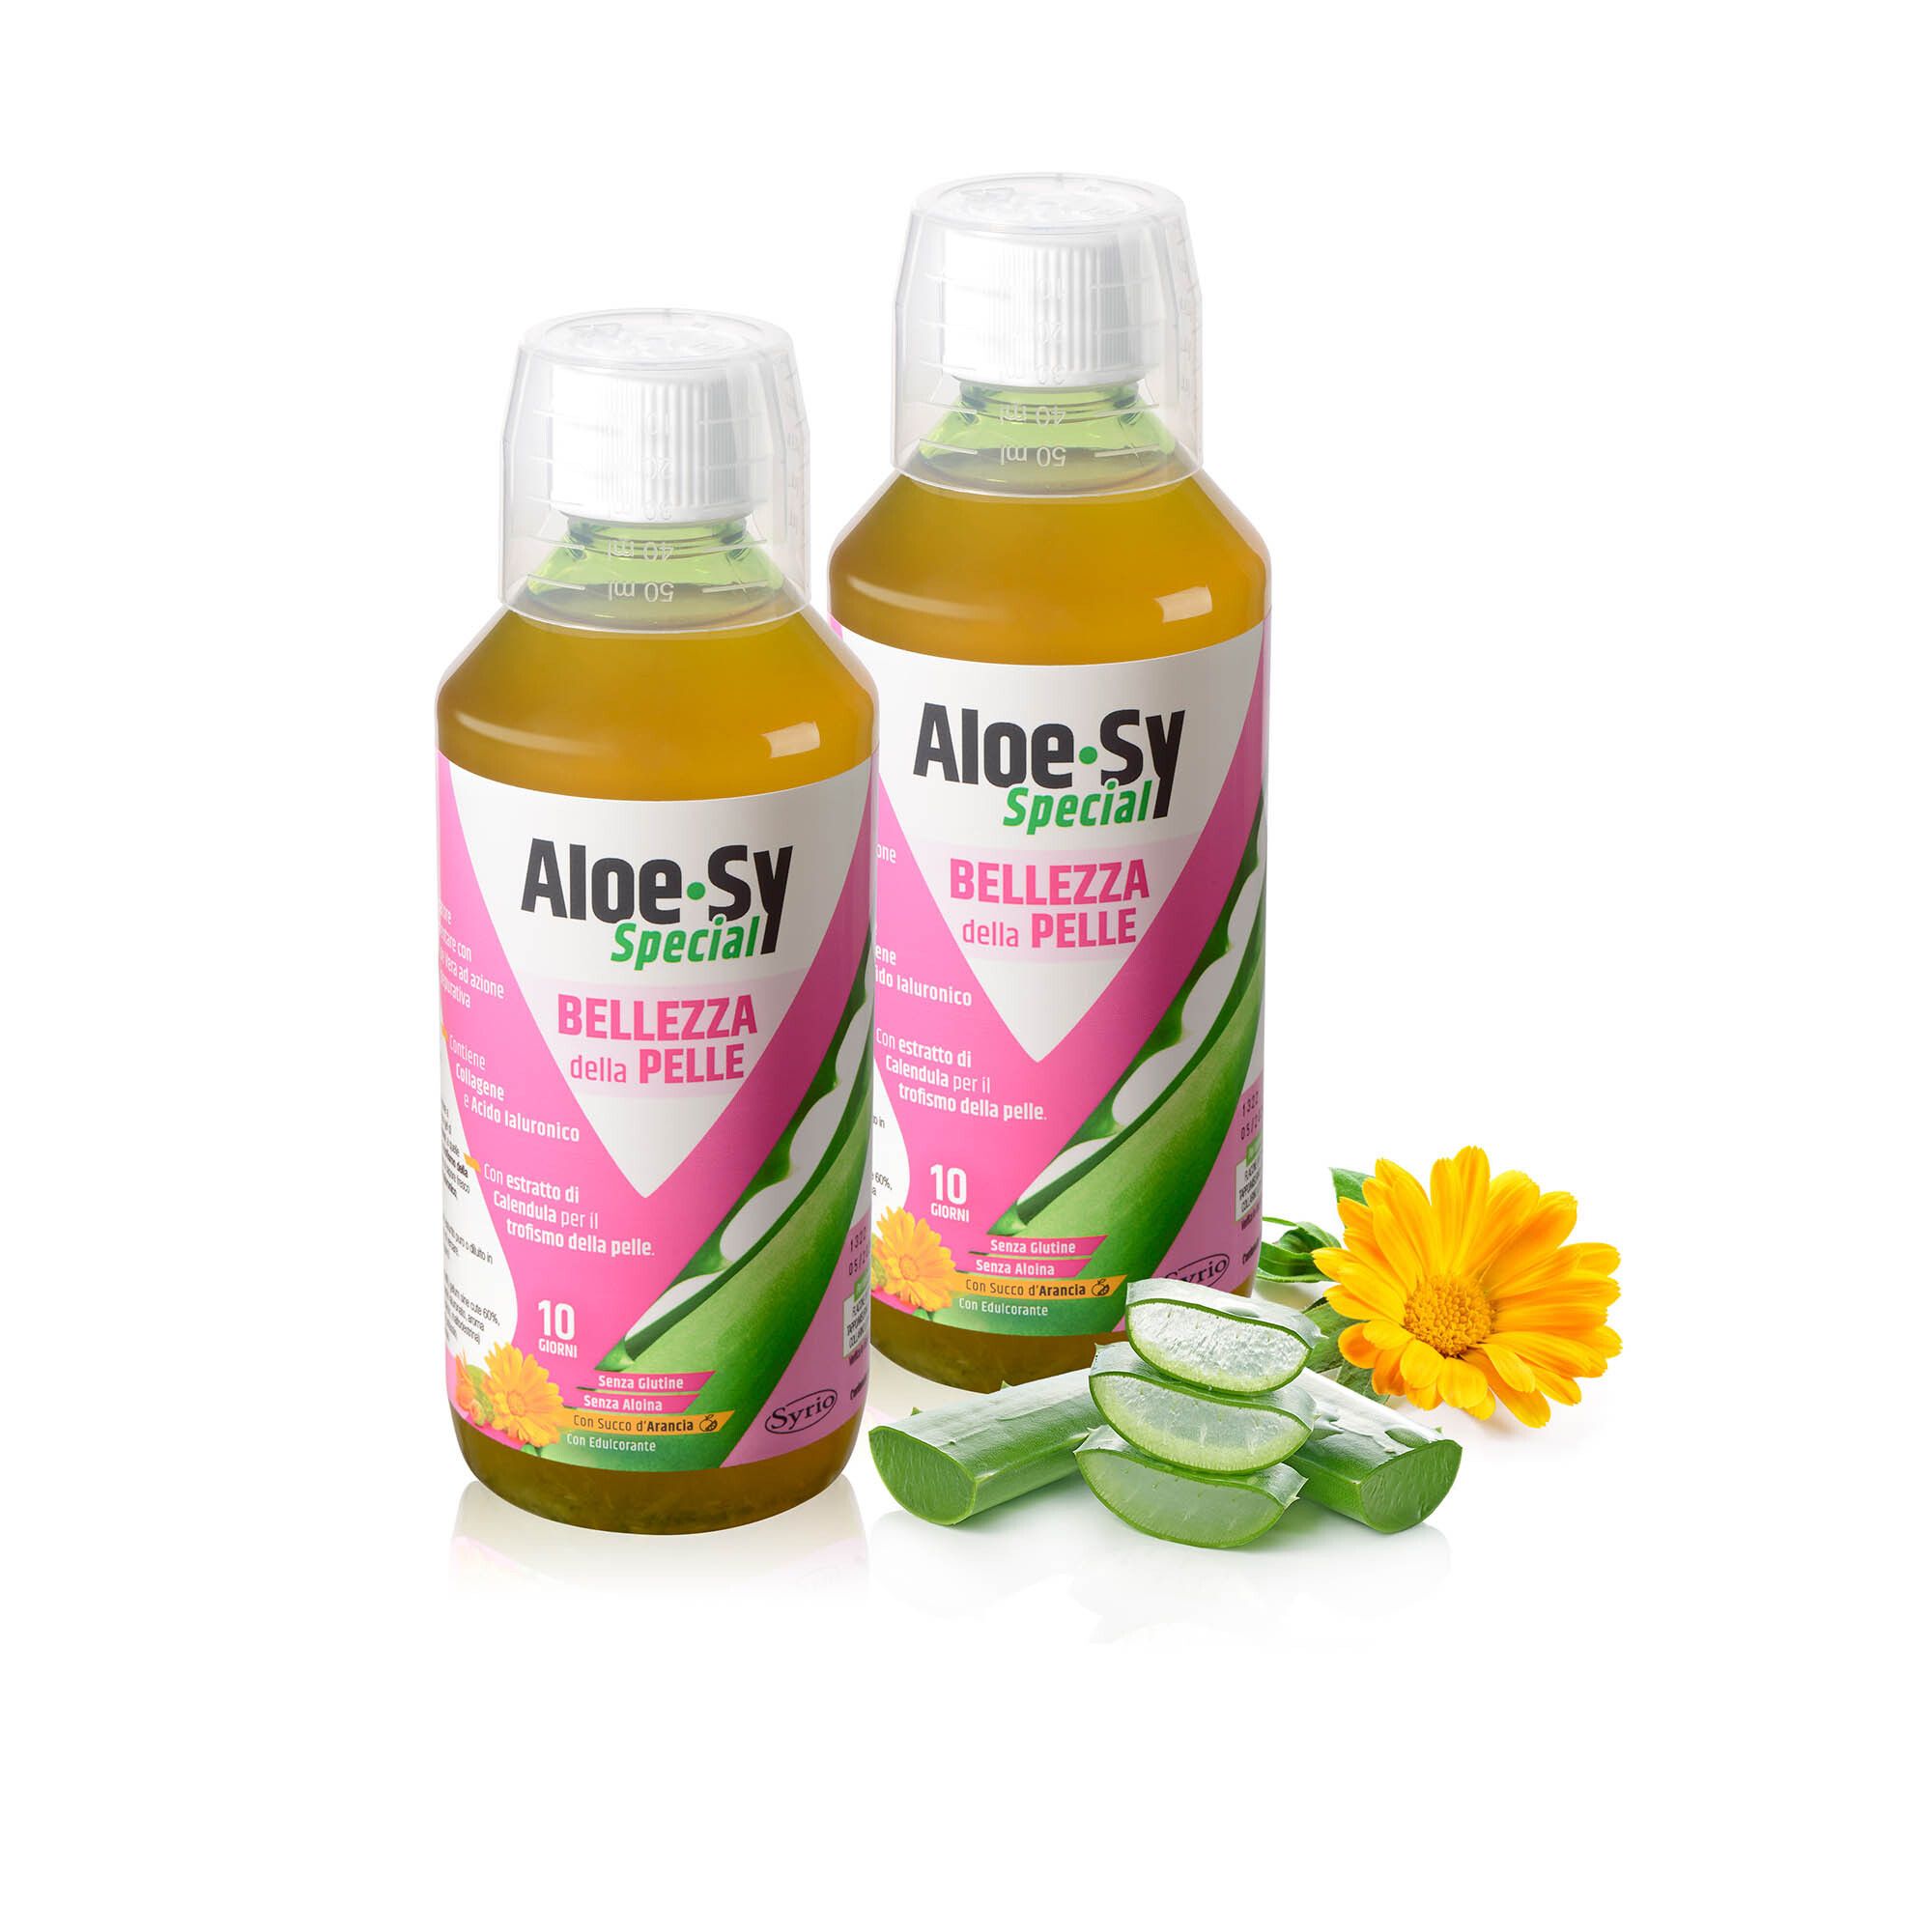 Aloe-Sy Special Bellezza della pelle, integratore (2 pz)